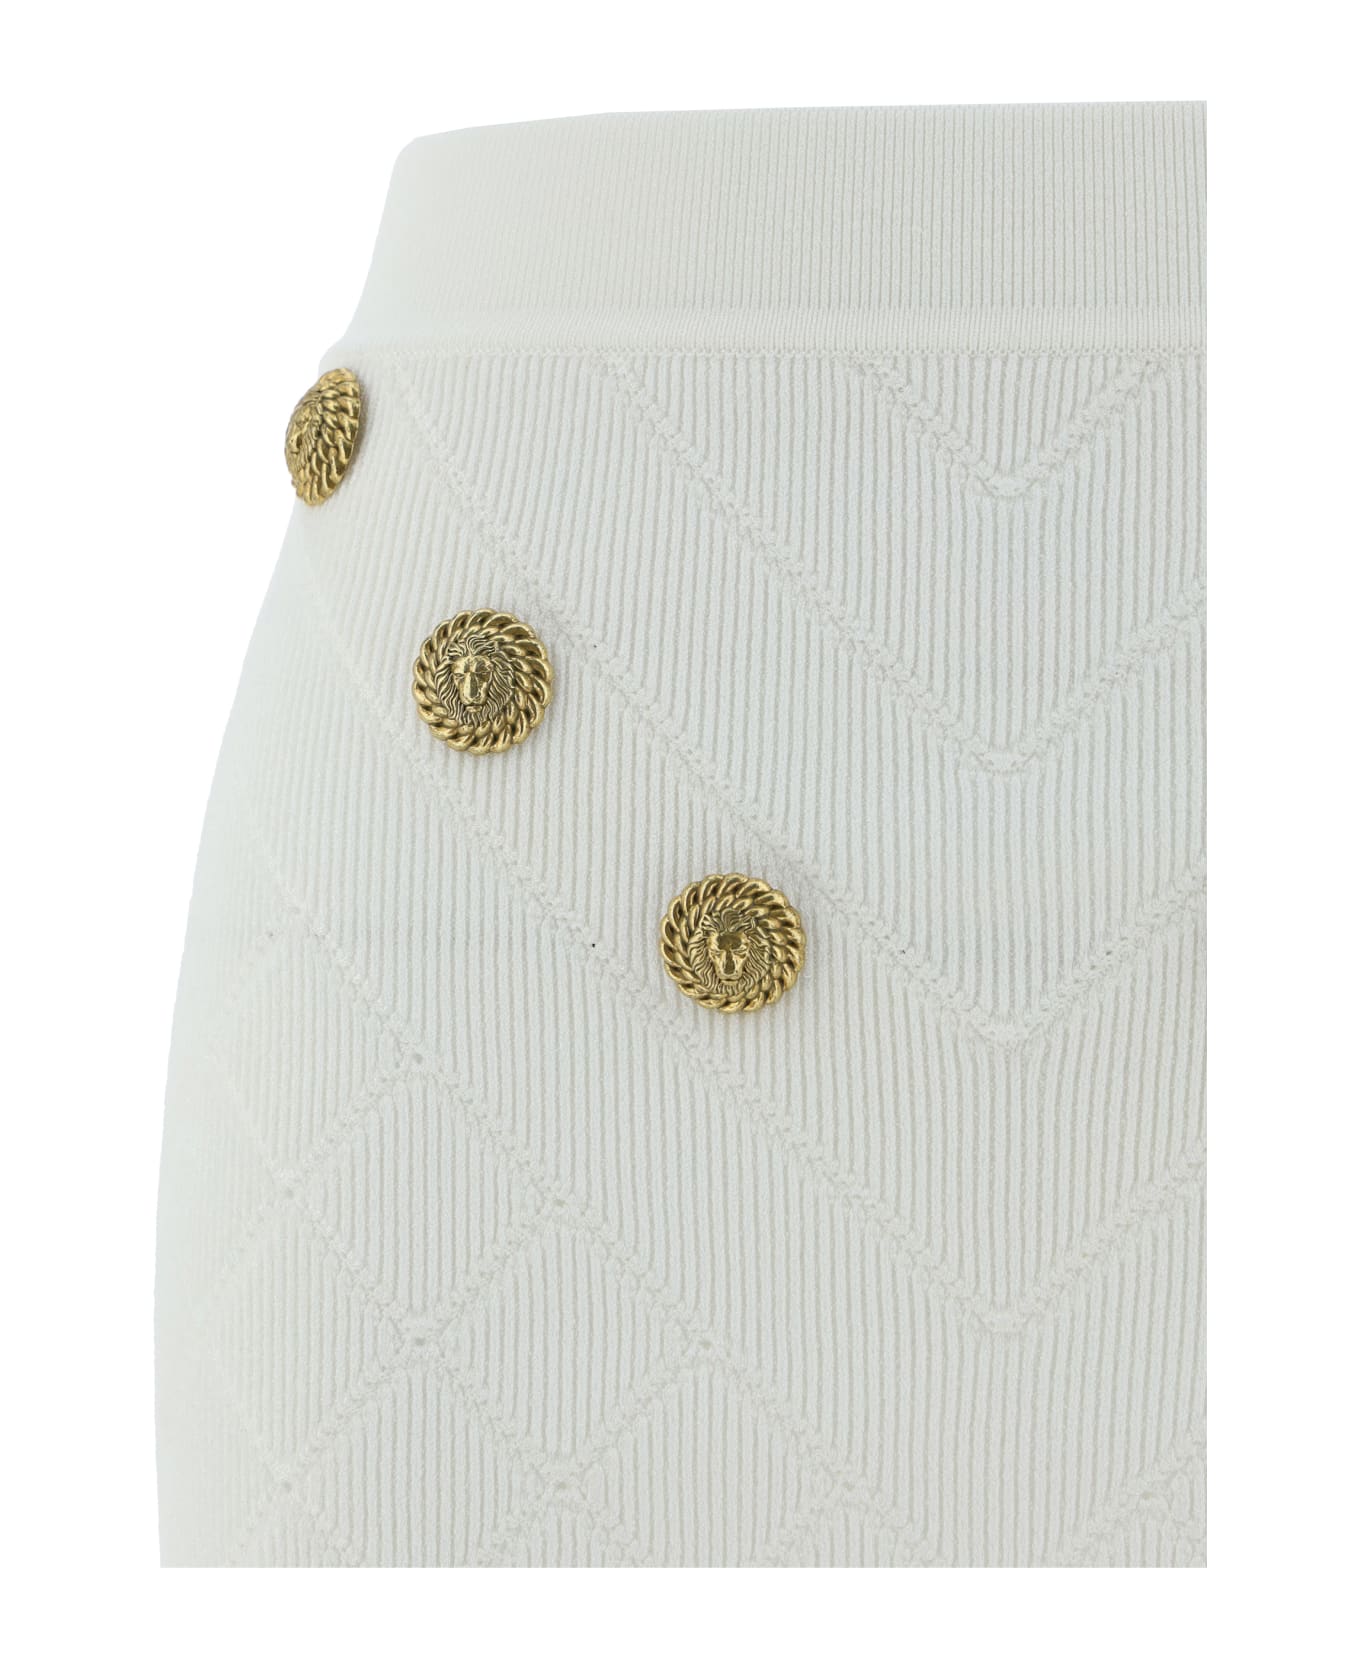 Balmain 6-button Knit Skirt - 0fa Blanc